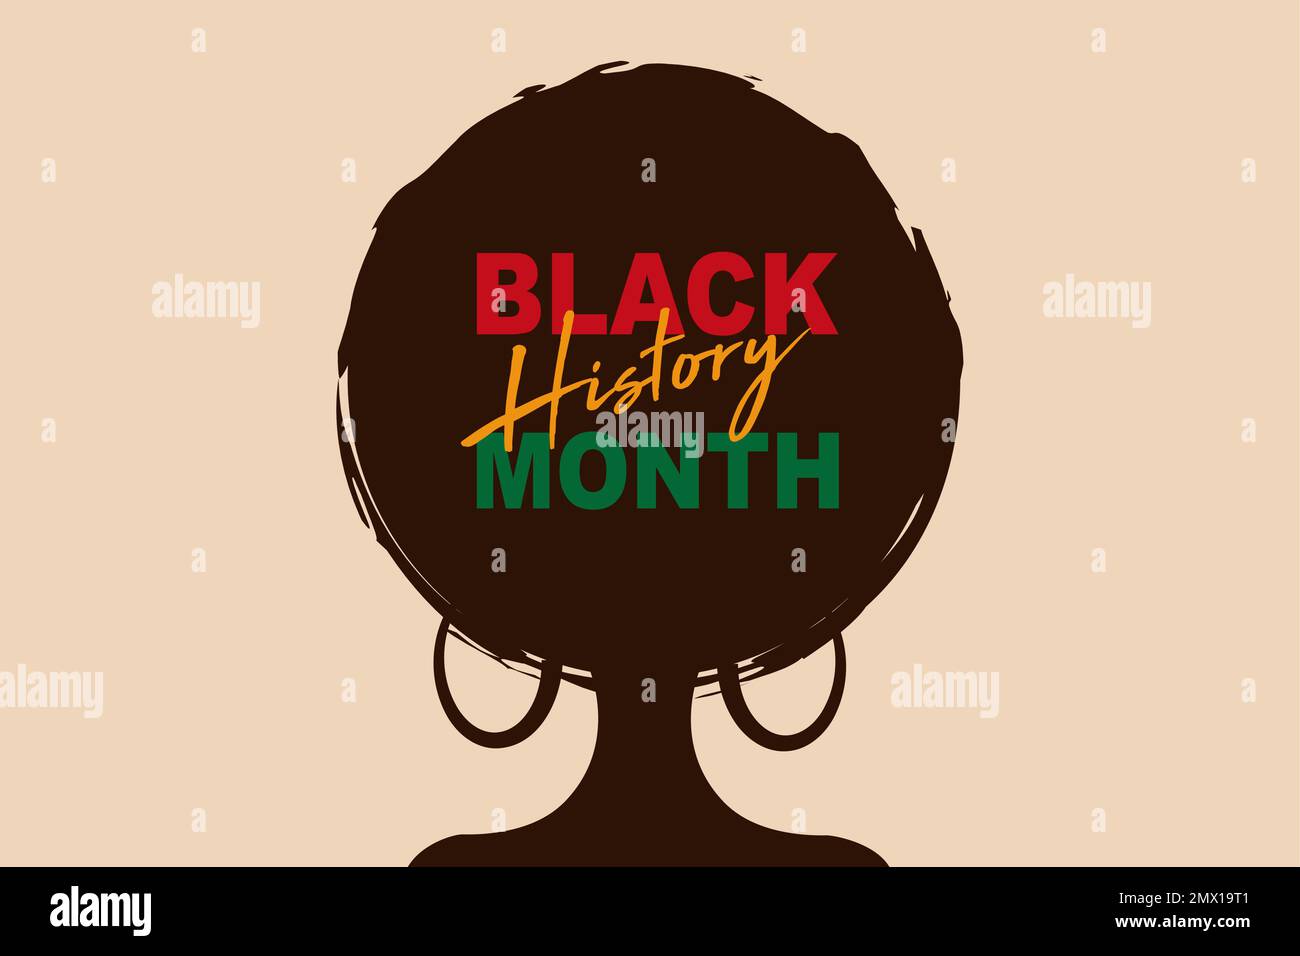 National Black History Month. Urlaubskonzept. Vorlage für Hintergrund, Banner, Karte, Poster mit Texteindruck. Afroamerikanische Geschichte. Eine Feier Stock Vektor